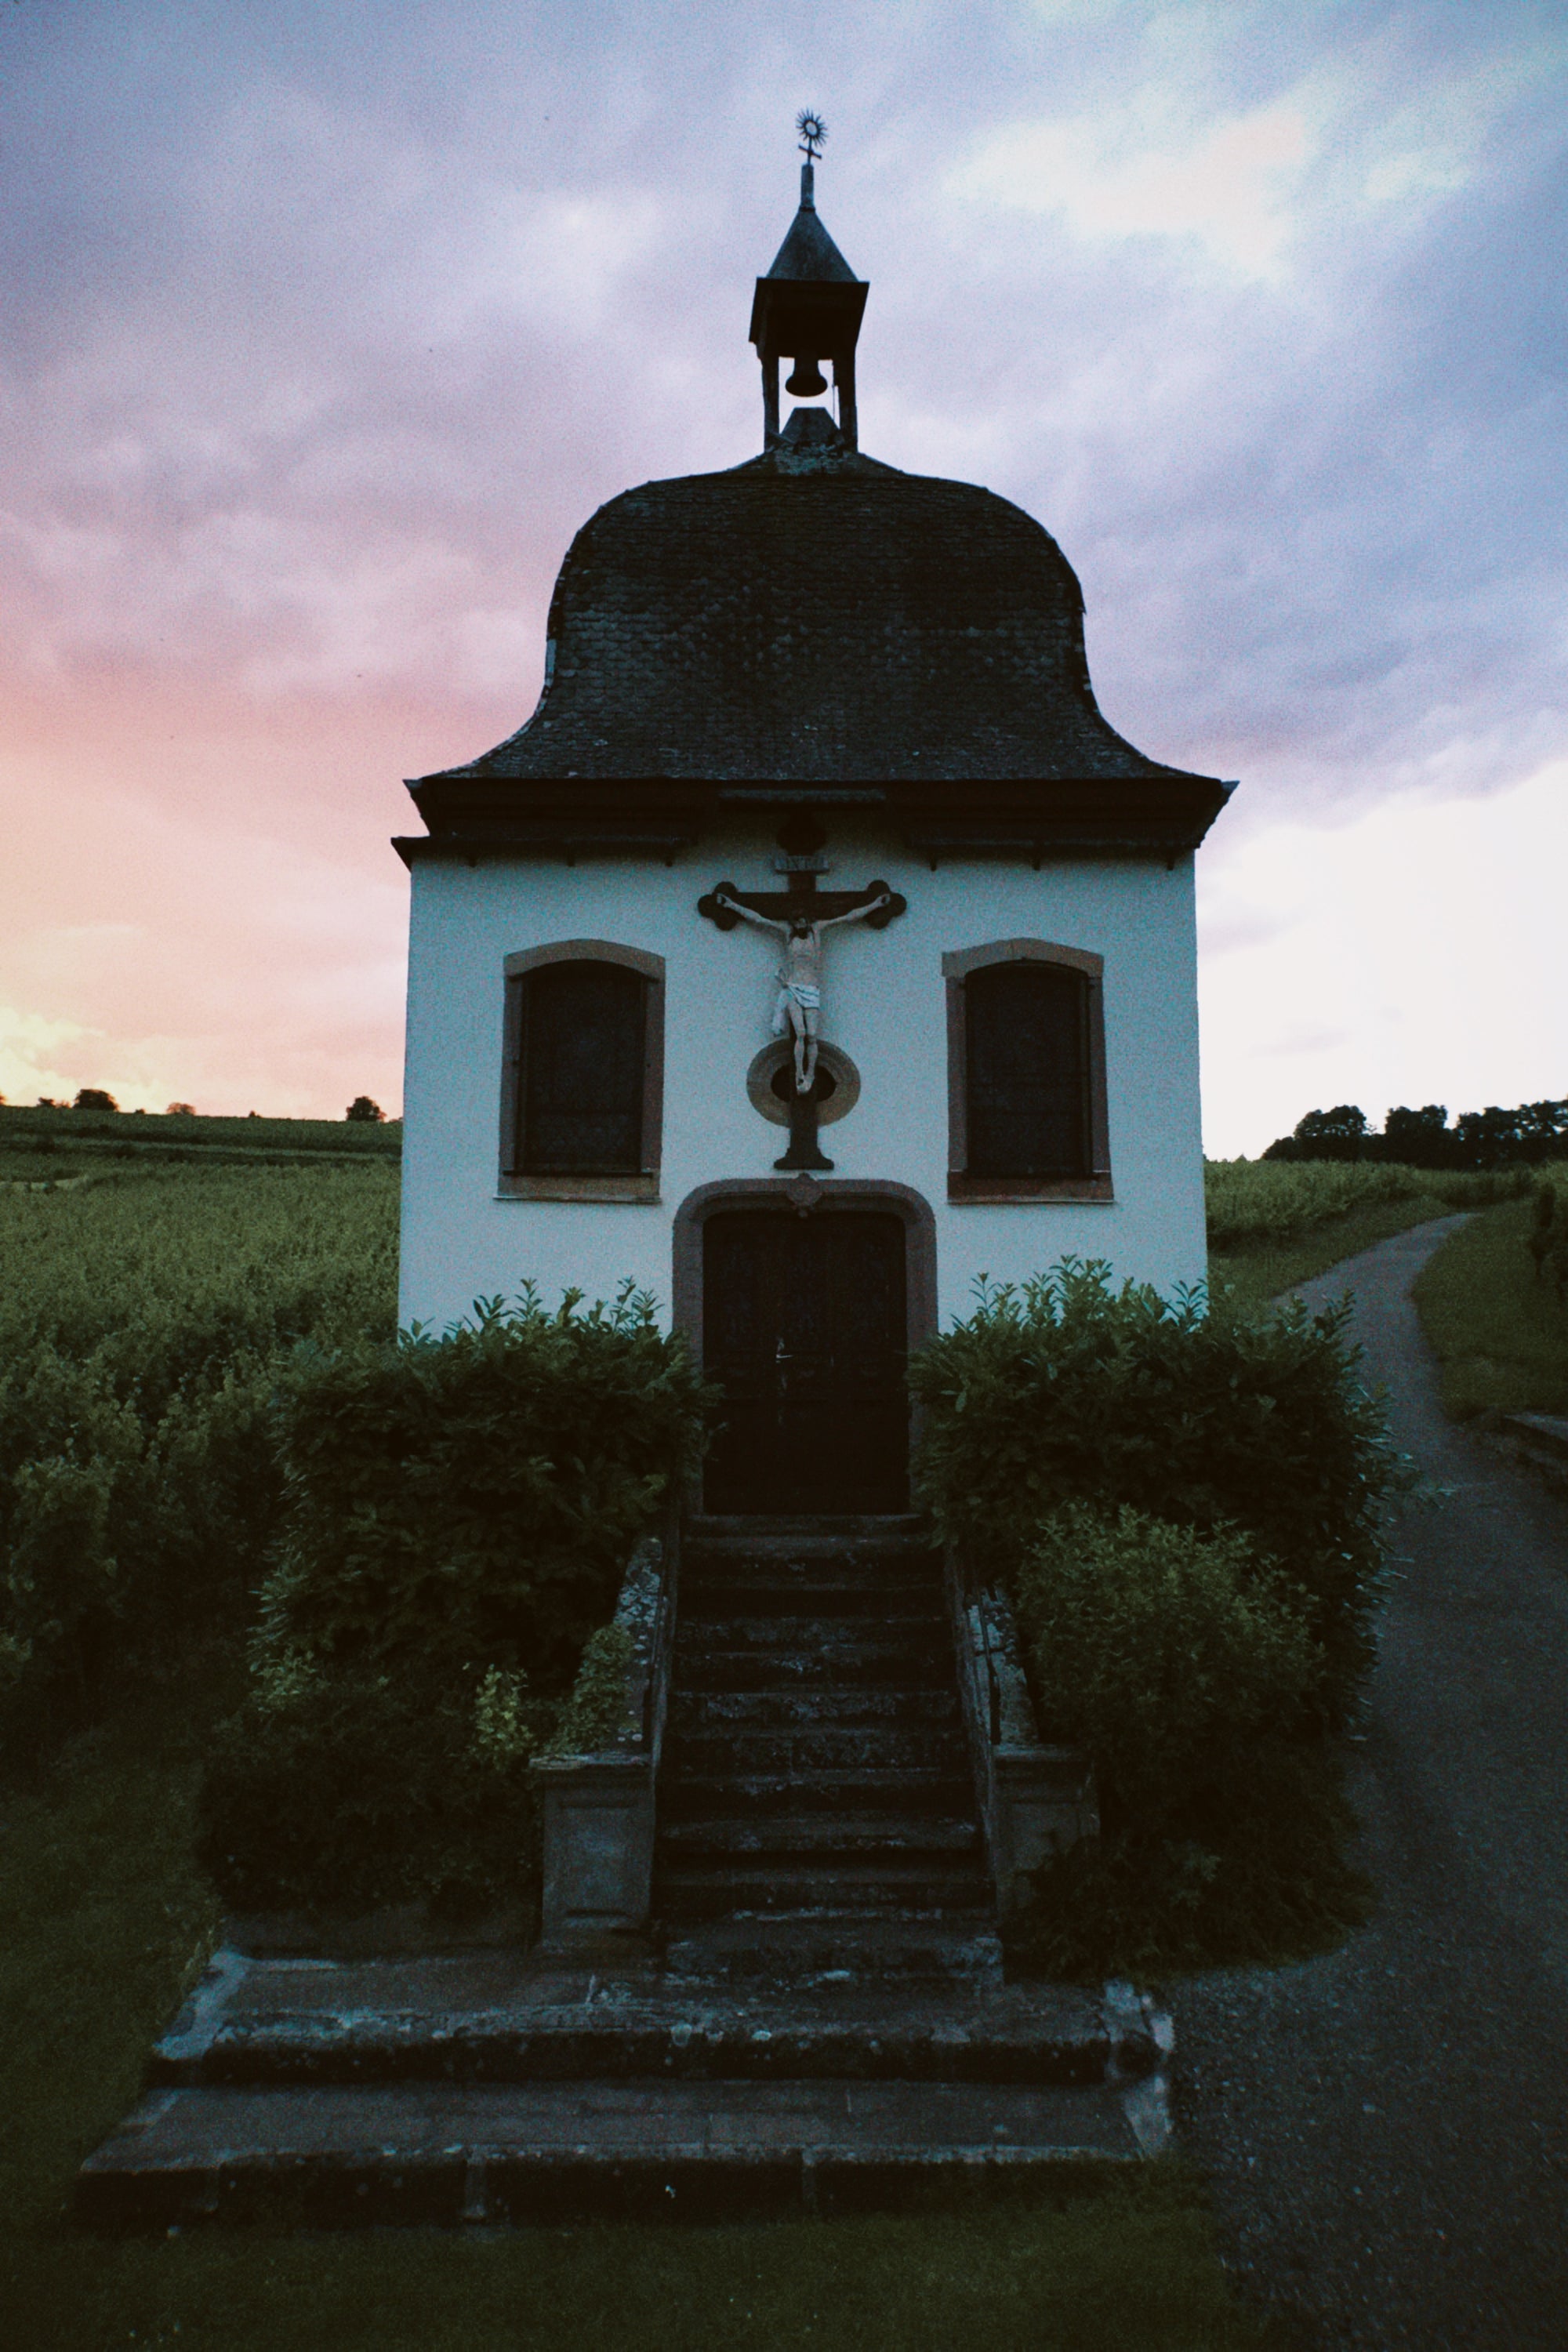 Kapelle in Marlenheim, Elsass